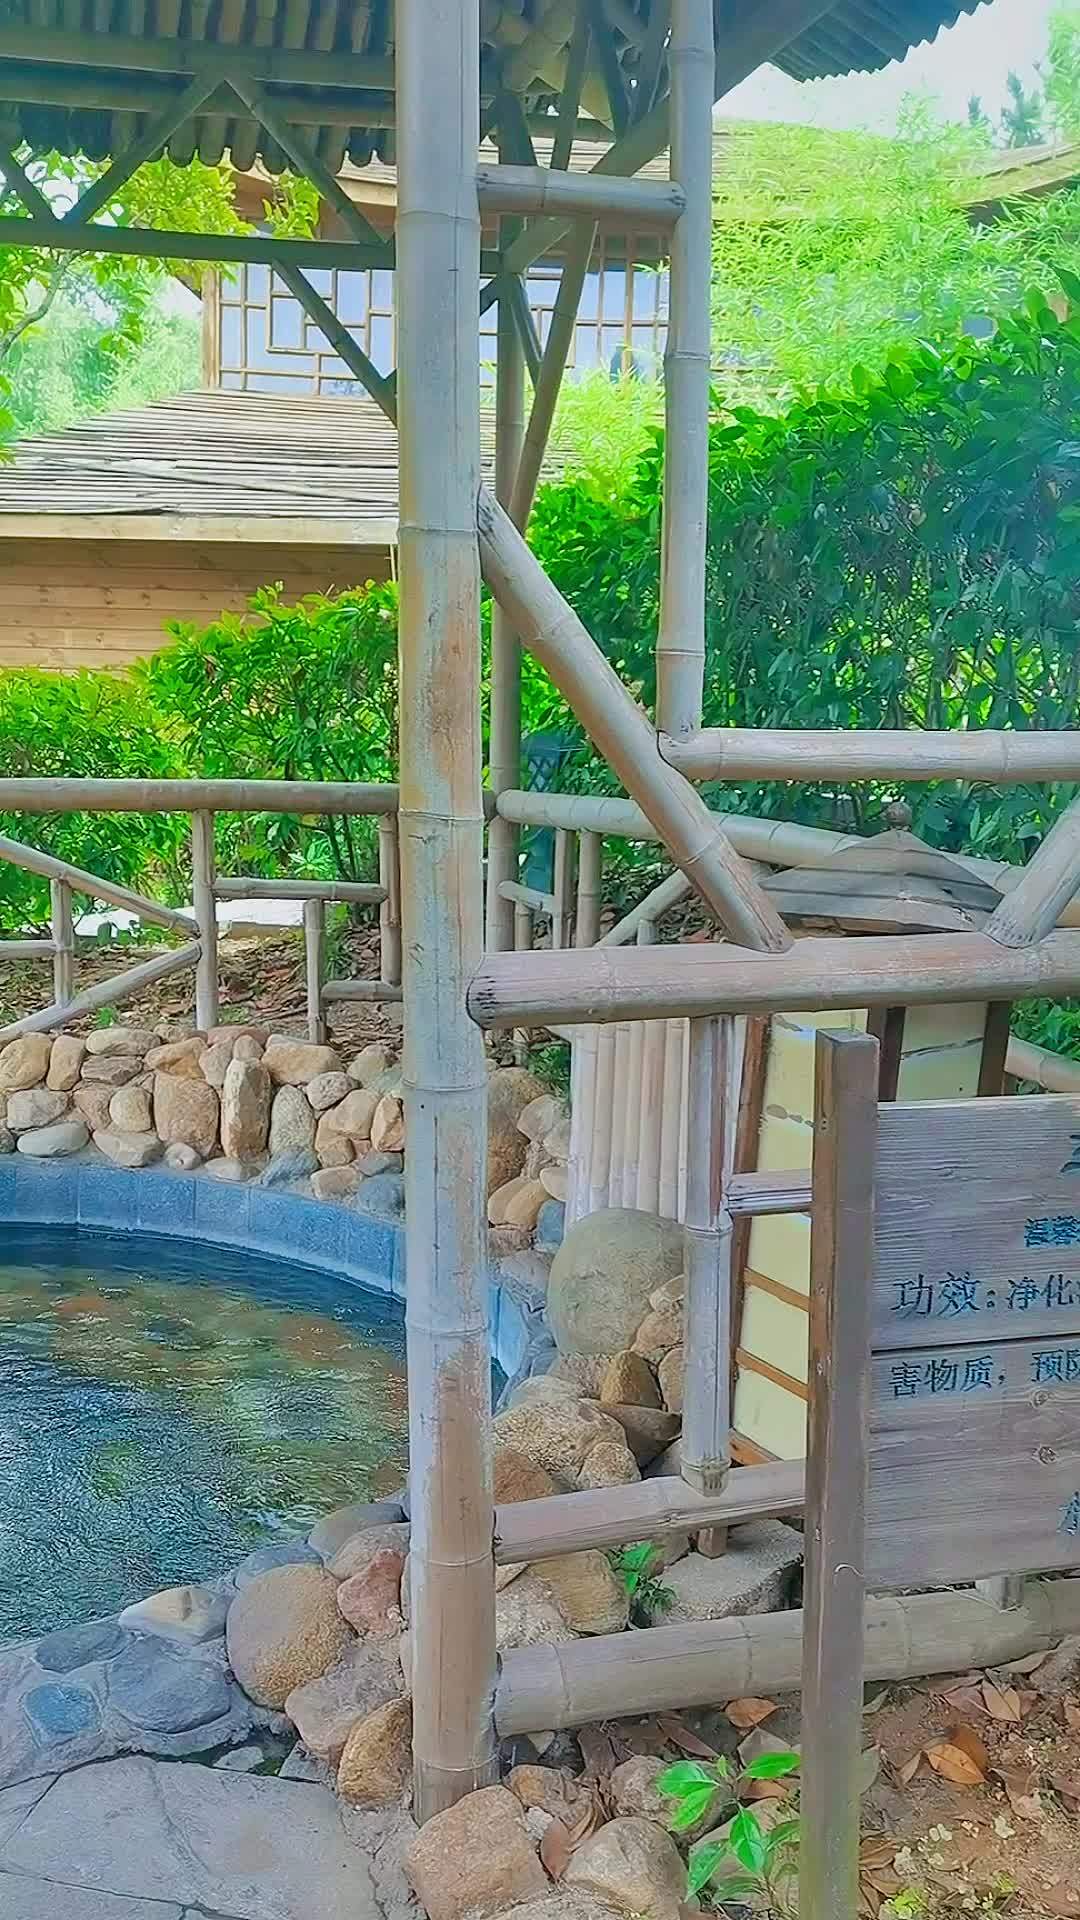 鸡公山依云森林温泉坐落于百年避暑圣地国家aaaa级名胜风景区鸡公山